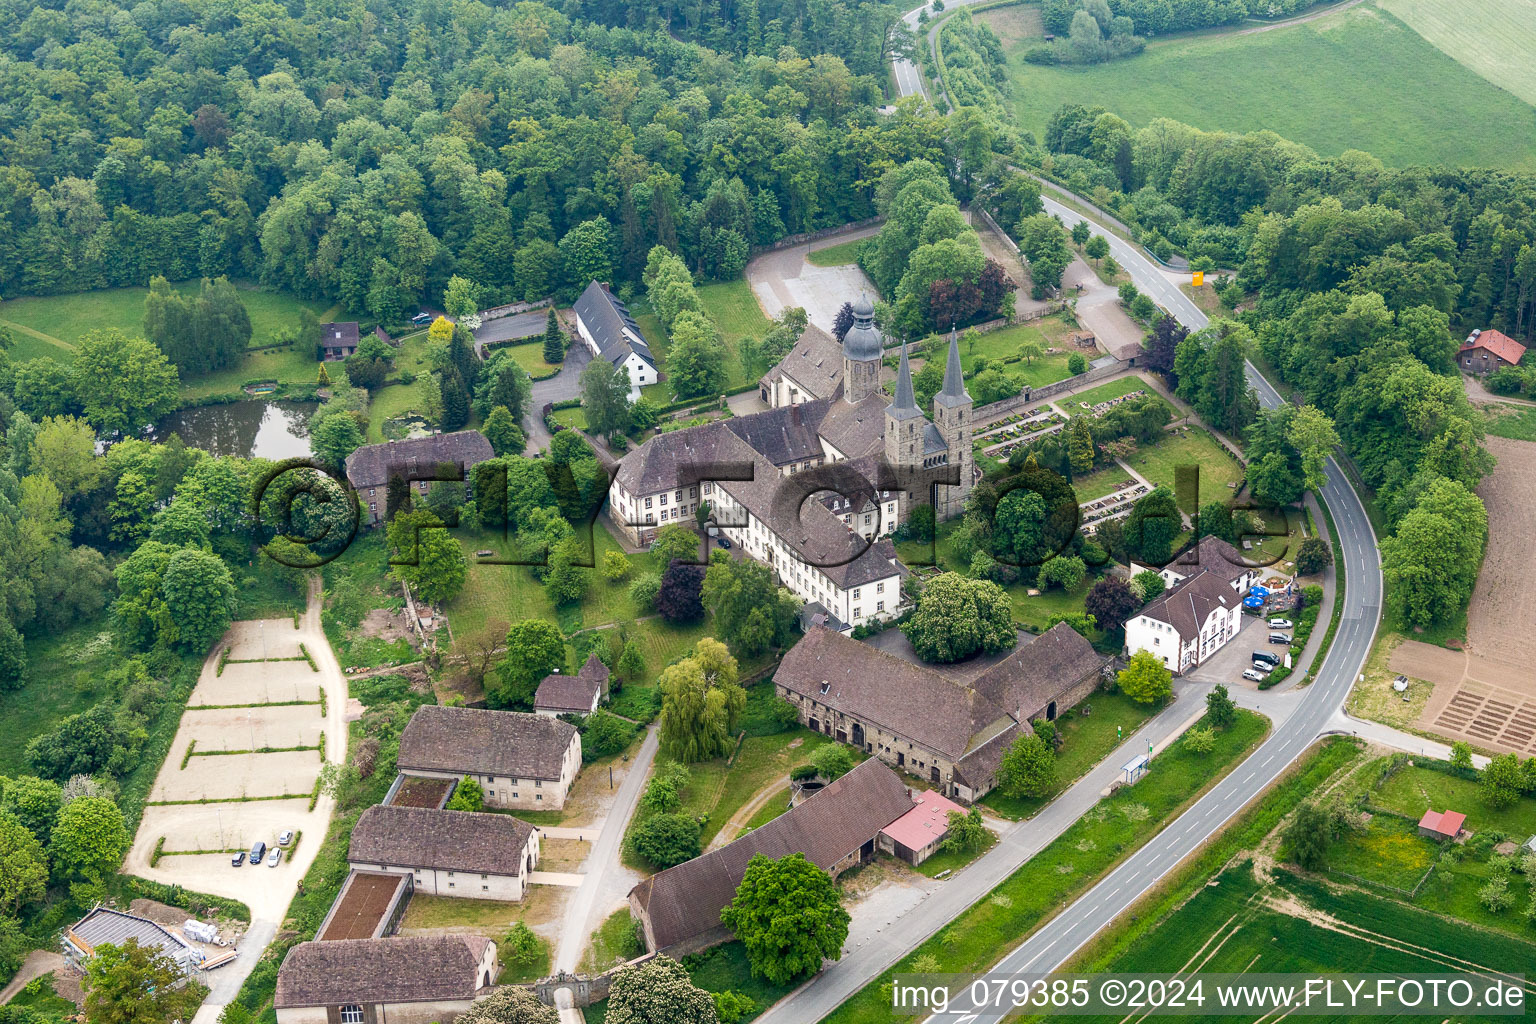 Vue aérienne de Ensemble immobilier du monastère et de l'église abbatiale Saint-Jacques l'Ancien à Marienmünster dans le département Rhénanie du Nord-Westphalie, Allemagne